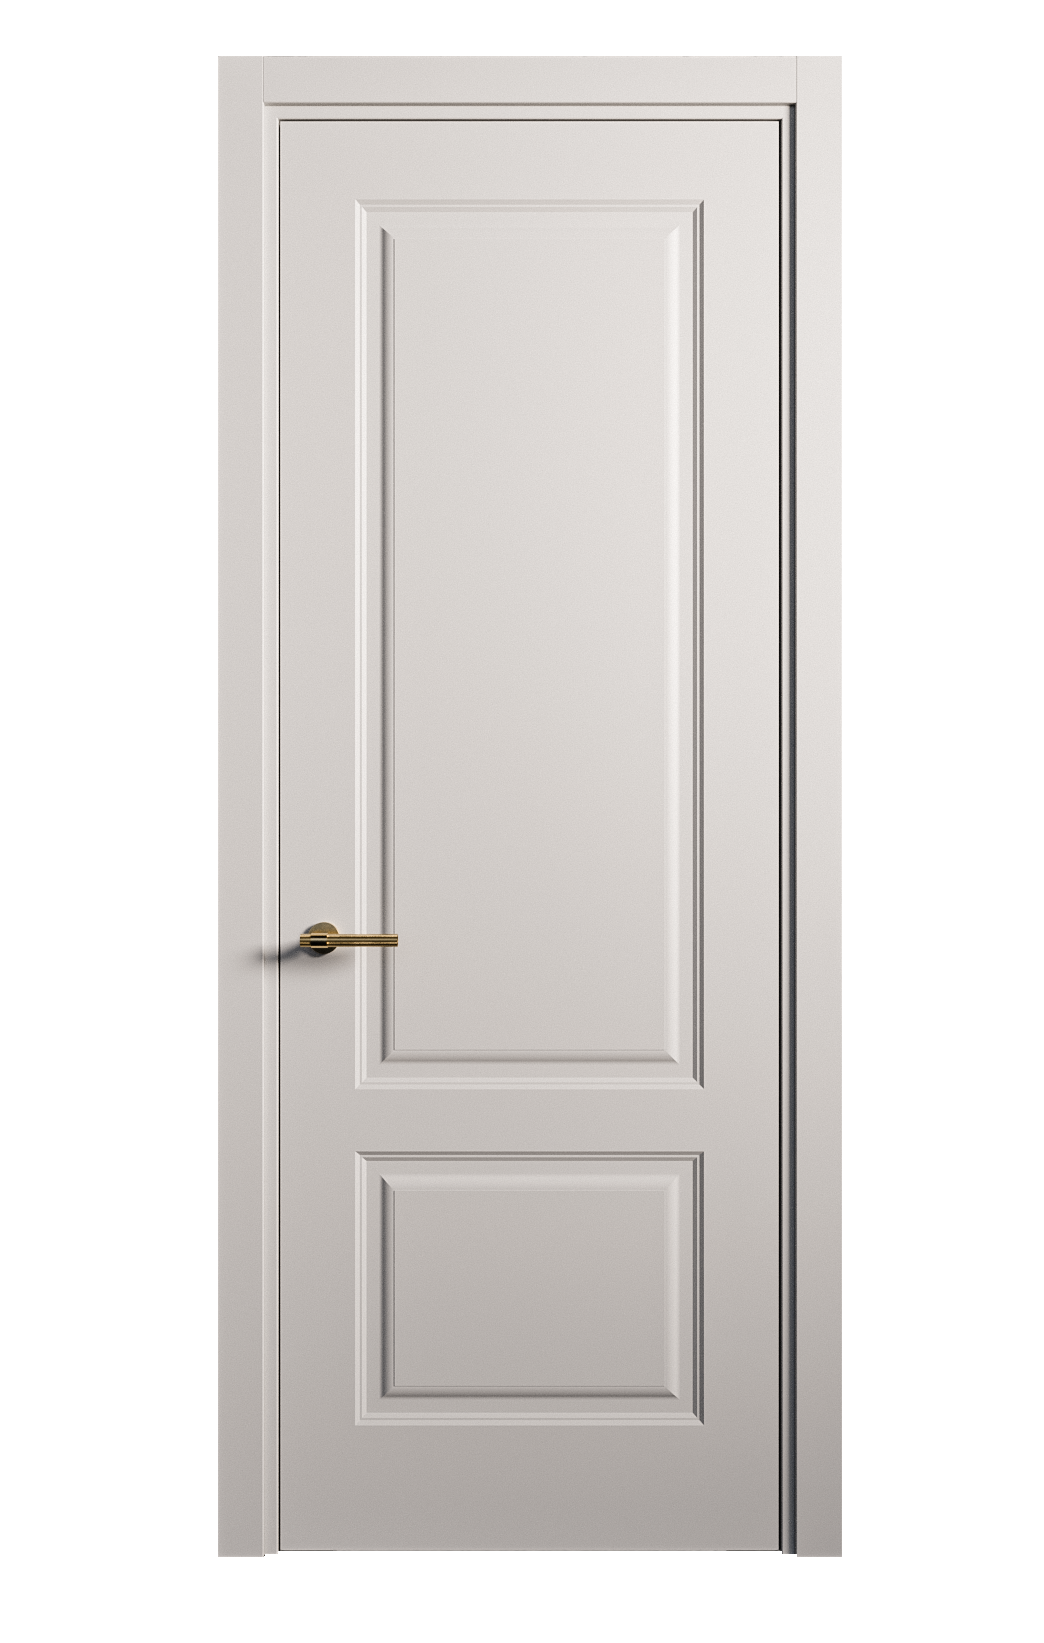 Межкомнатная дверь Вита-1 глухая эмаль ral 7047 26248